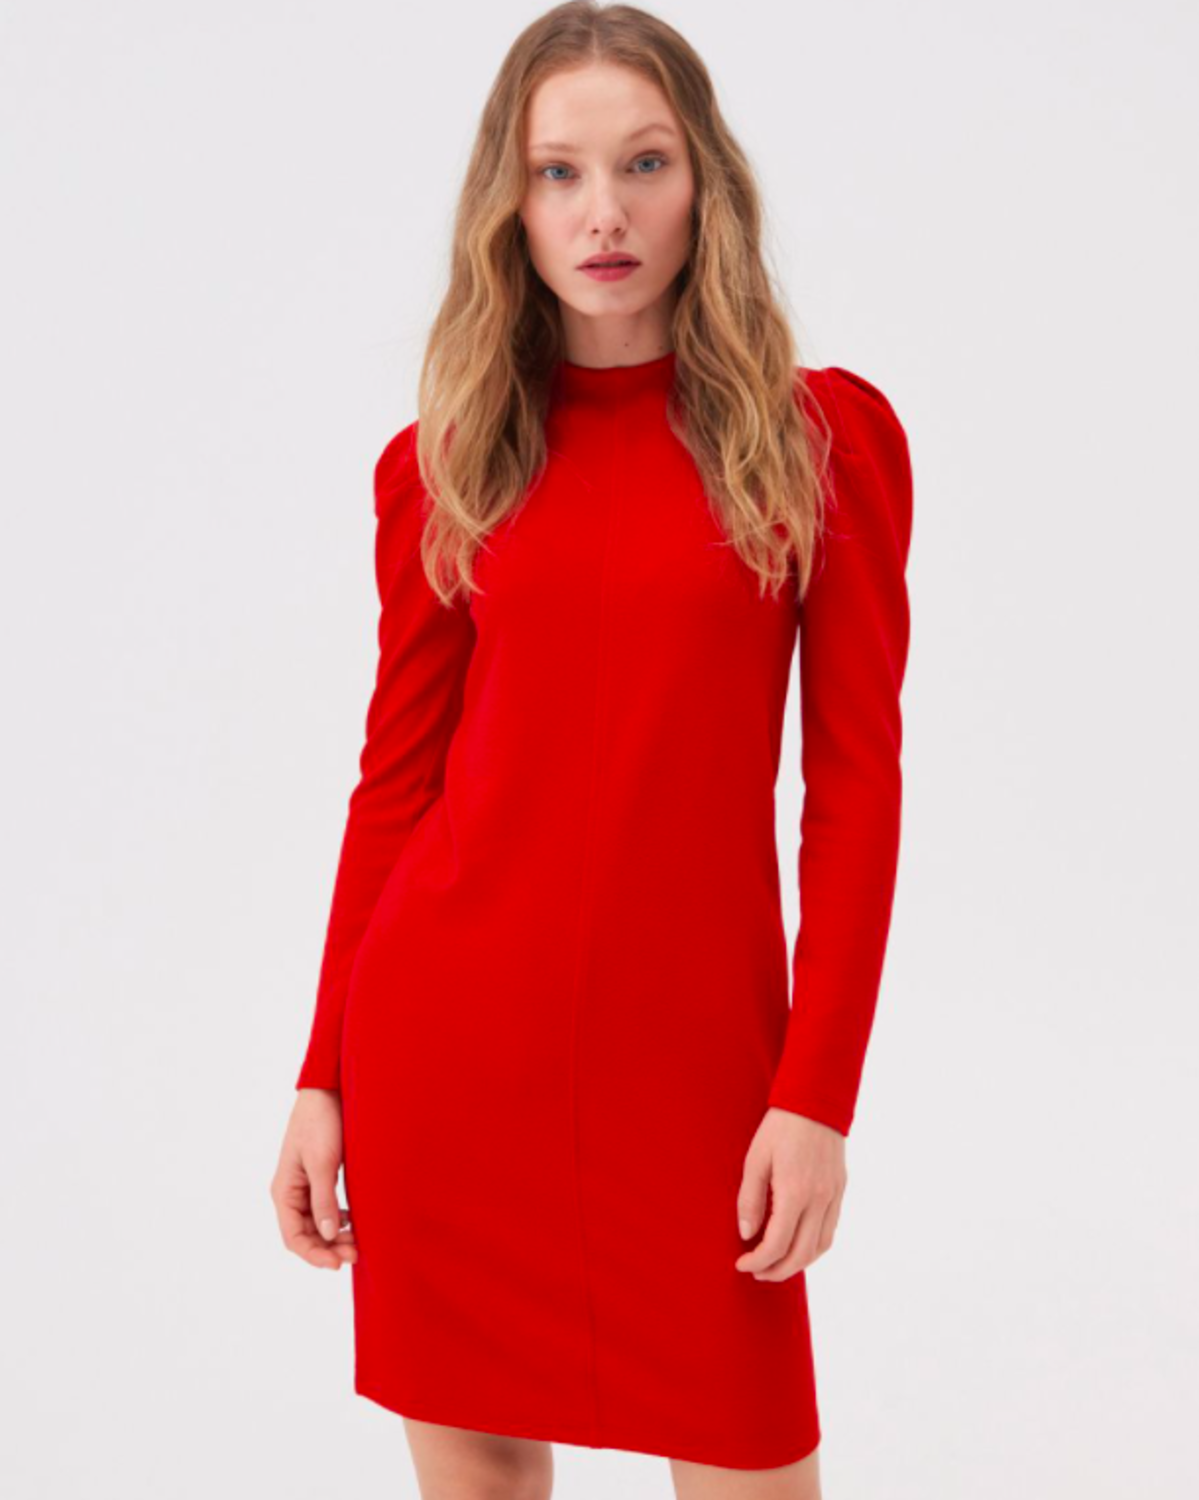 czerwona sukienka z Sinsaya za 59 zł w stylu Małgorzaty Kożuchowskiej